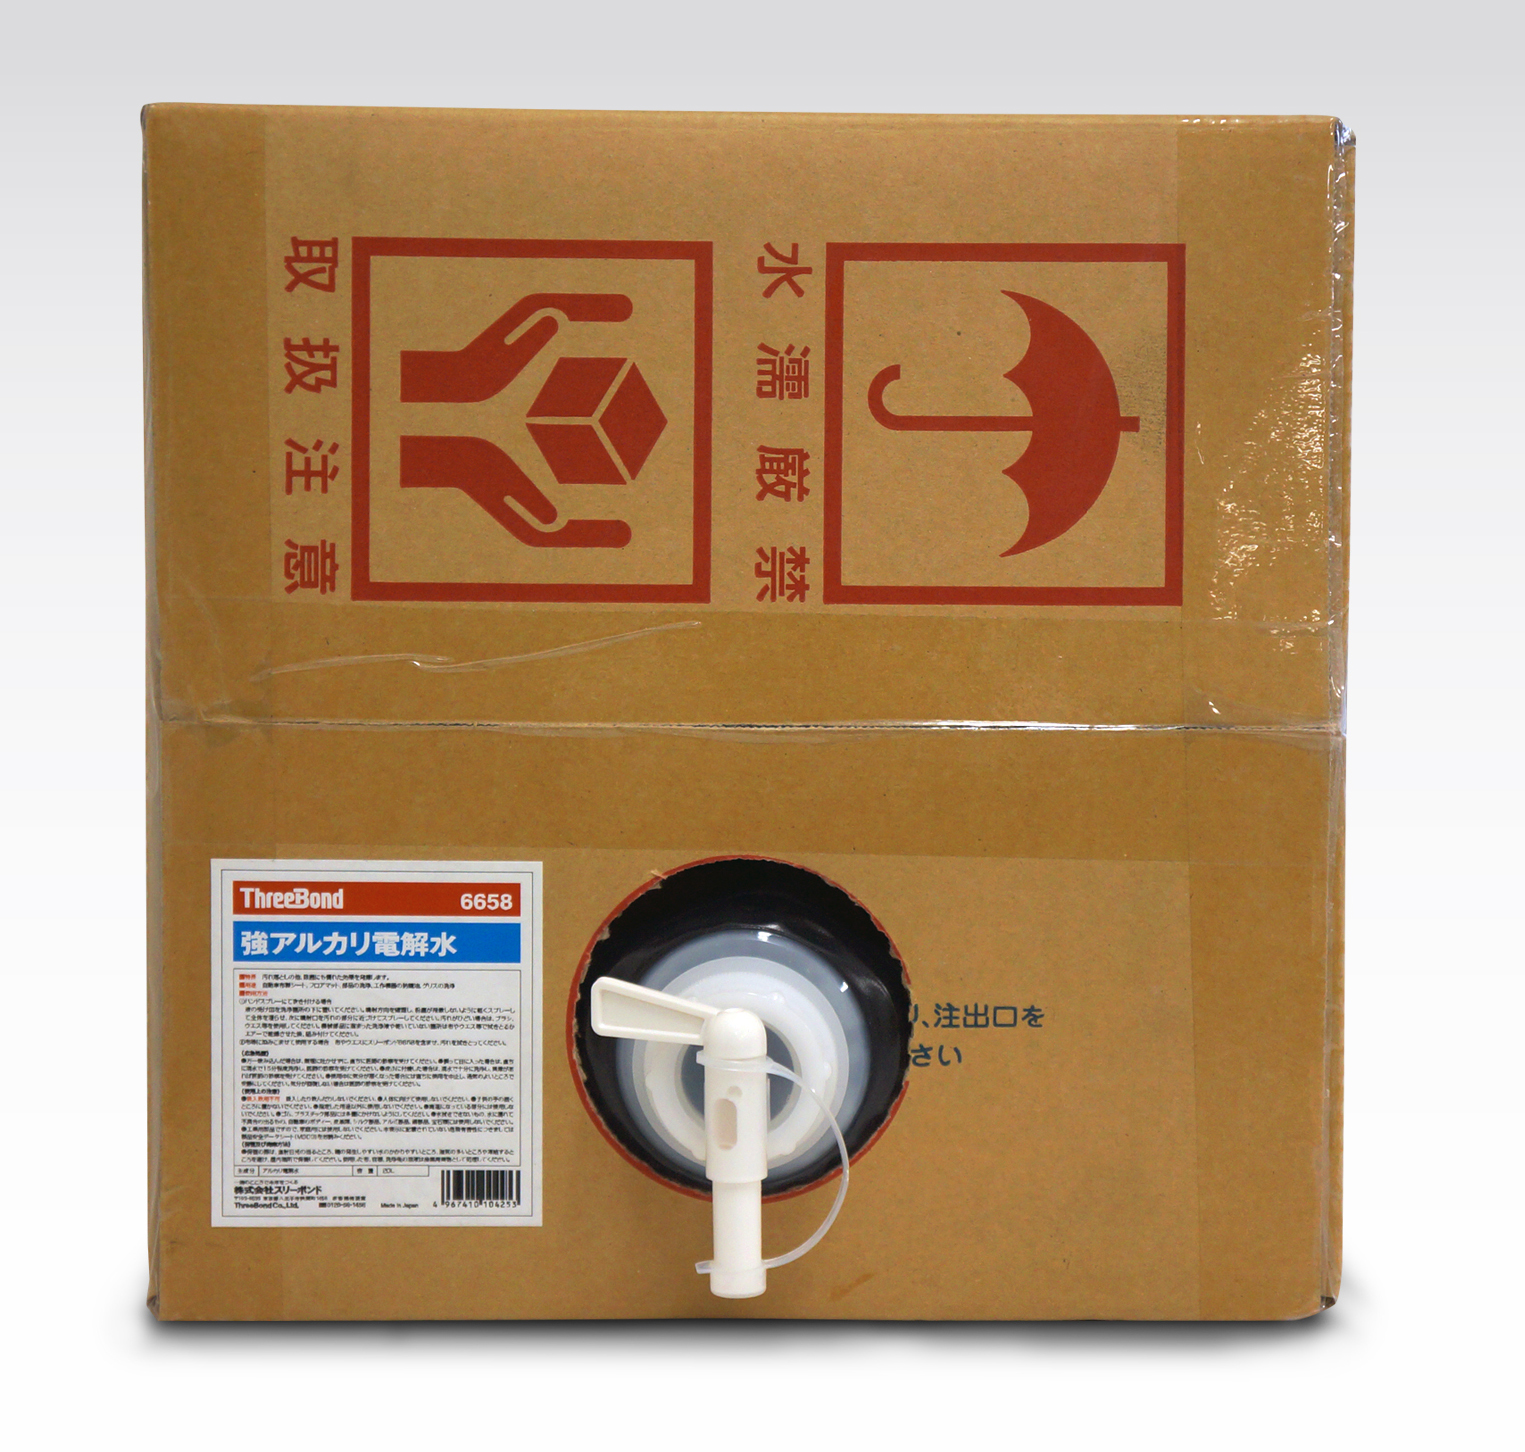 Ea922a 30 l 電解水 強ｱﾙｶﾘ性 脱脂 除菌 抗菌 洗浄 のページ Sakkey エスコの商品を検索